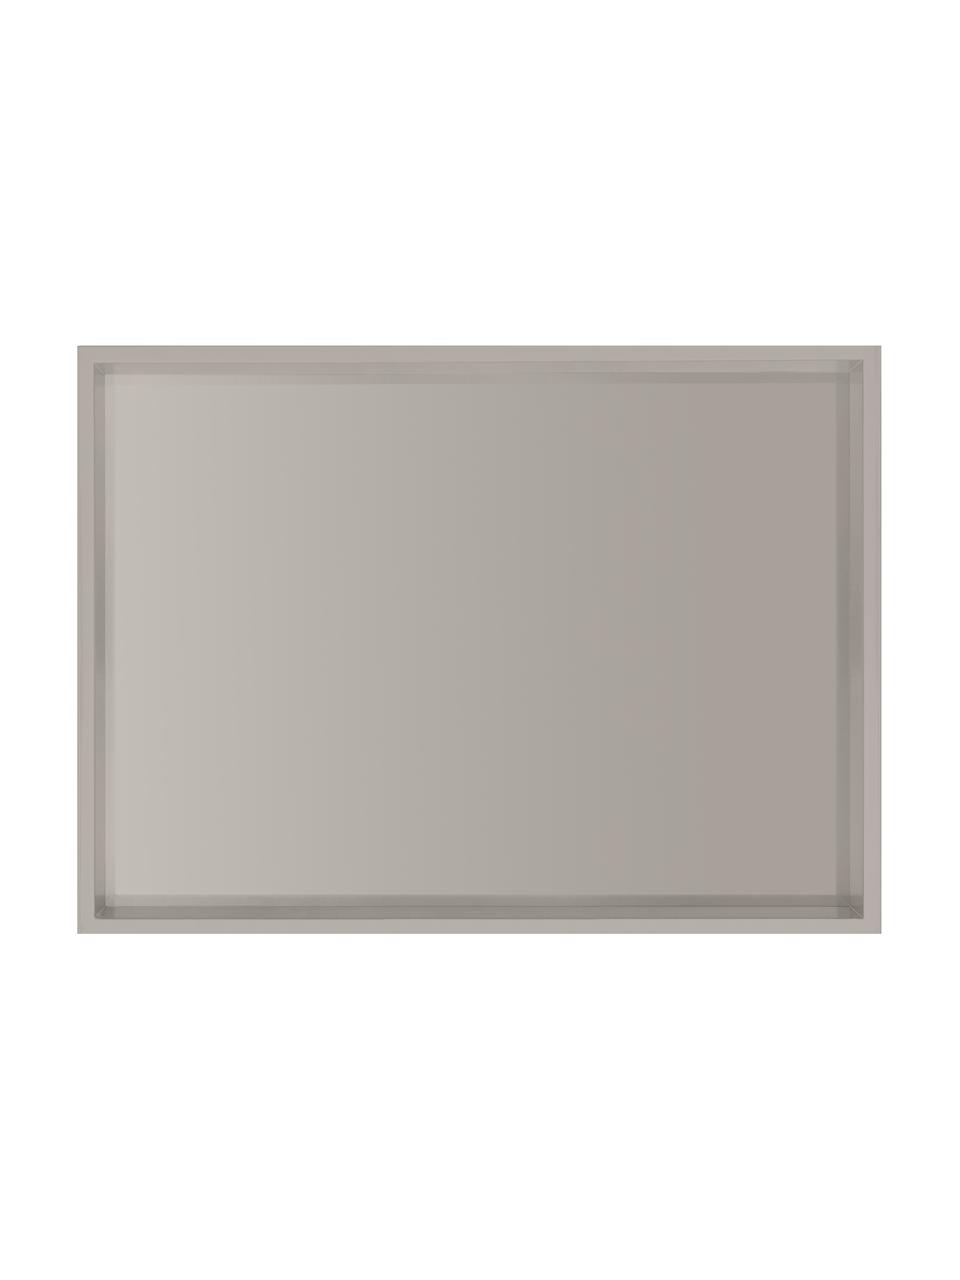 Gtand plateau gris brillant Hayley, Gris clair. Dessous : gris clair, larg. 24 x long. 33 cm